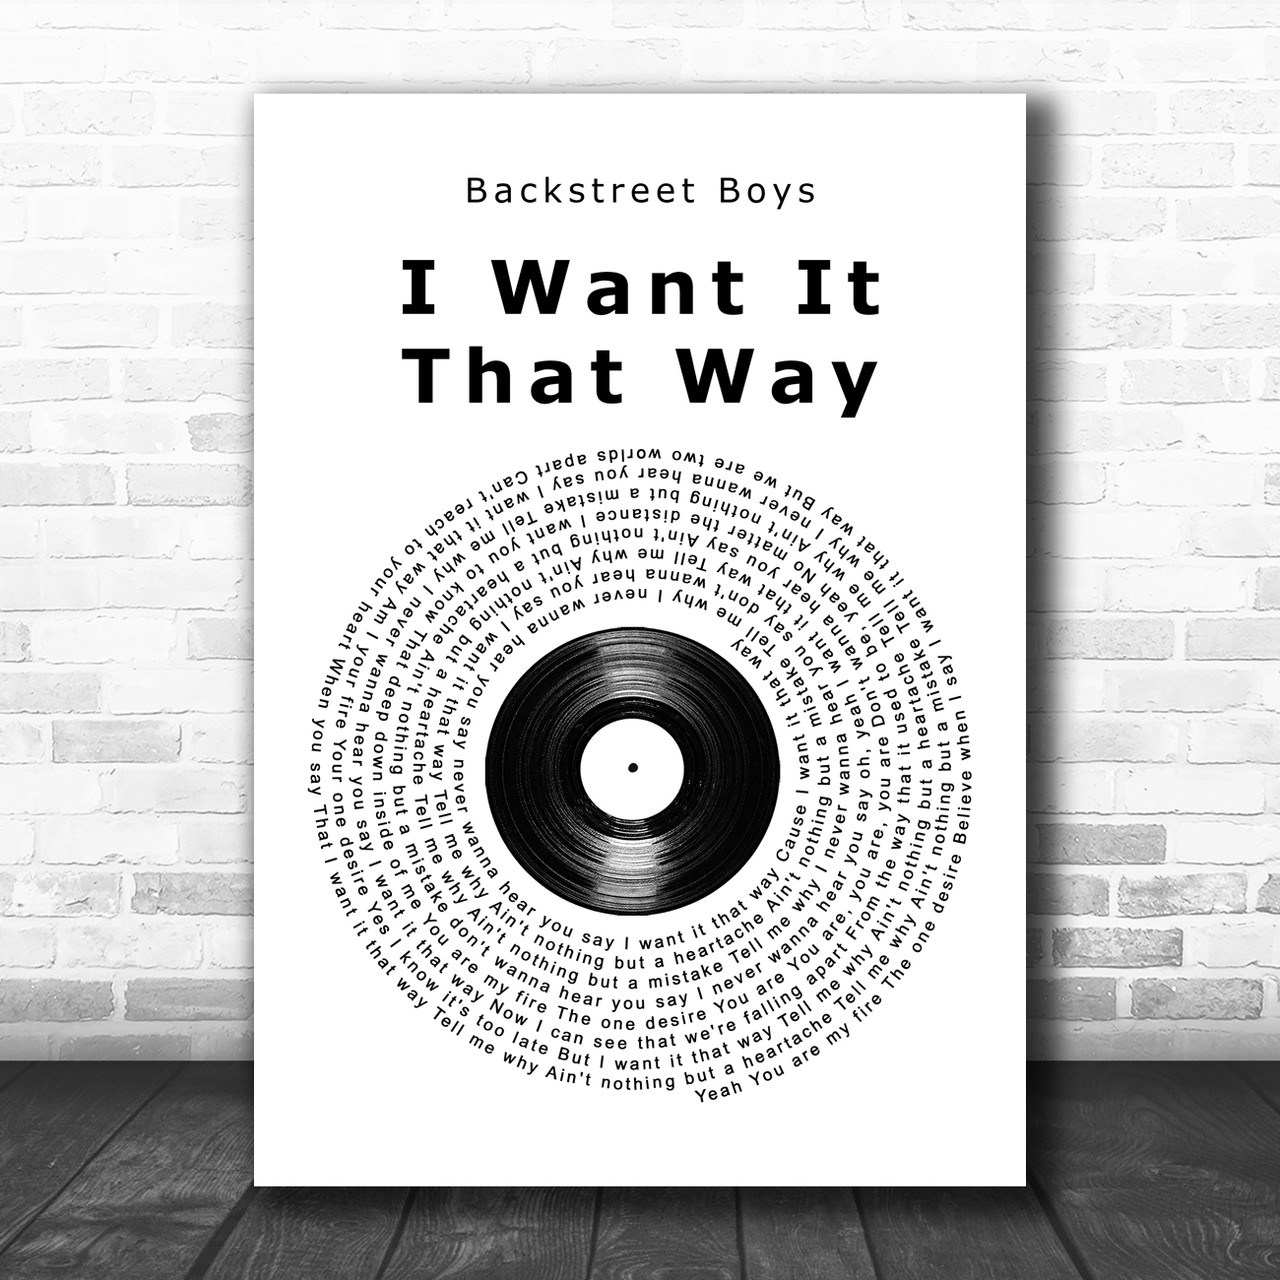 I WANT IT THAT WAY (TRADUÇÃO) - Backstreet Boys 